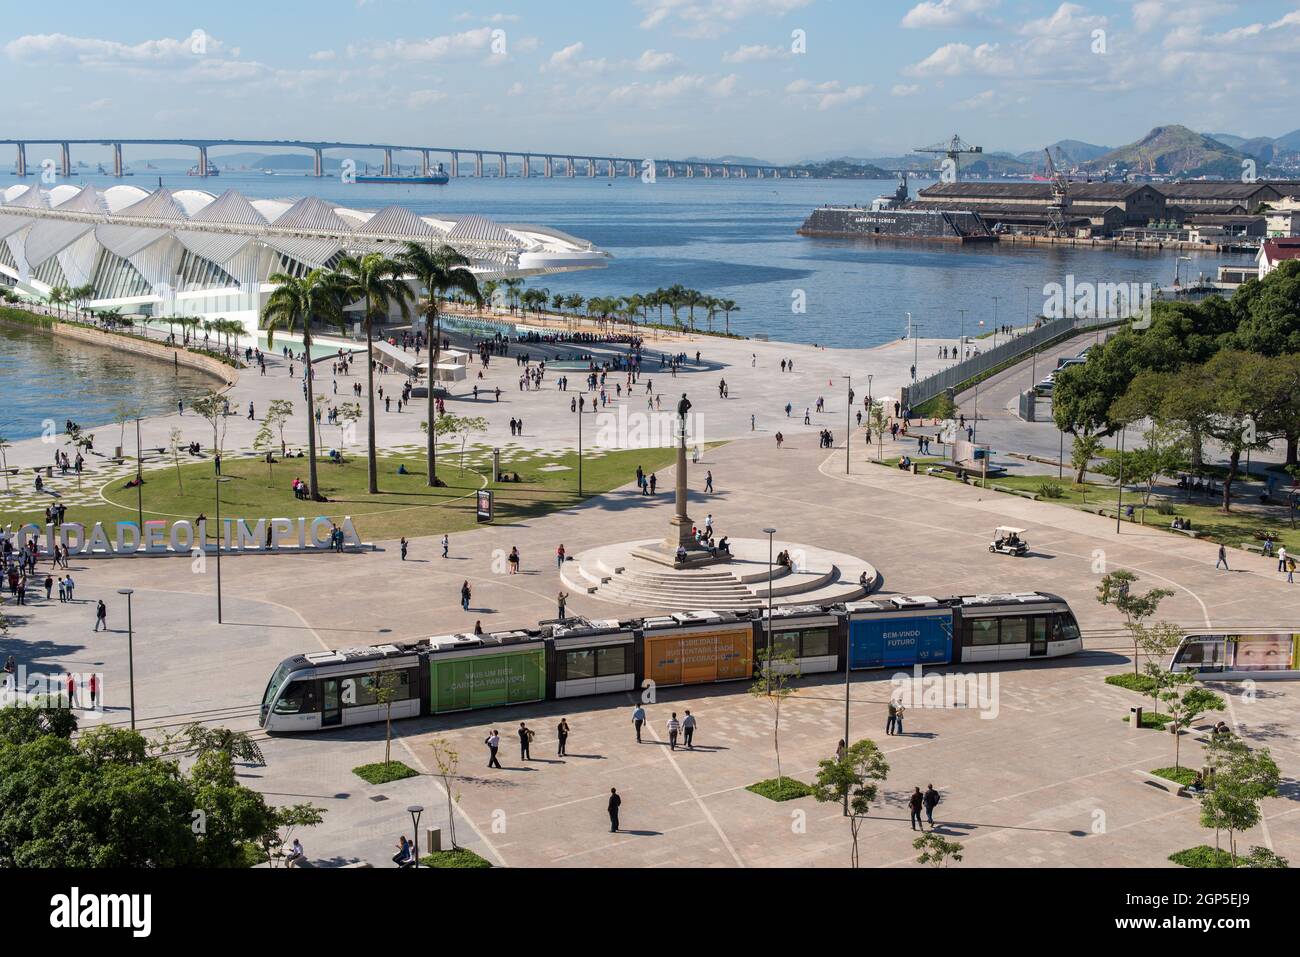 RIO DE JANEIRO, BRASILIEN - 14. JUNI 2016: Neue Stadtbahn VLT am Maua-Platz vorbei. Vor kurzem eröffnet, ist es das neueste Verkehrsmittel des öffentlichen Verkehrs. Stockfoto